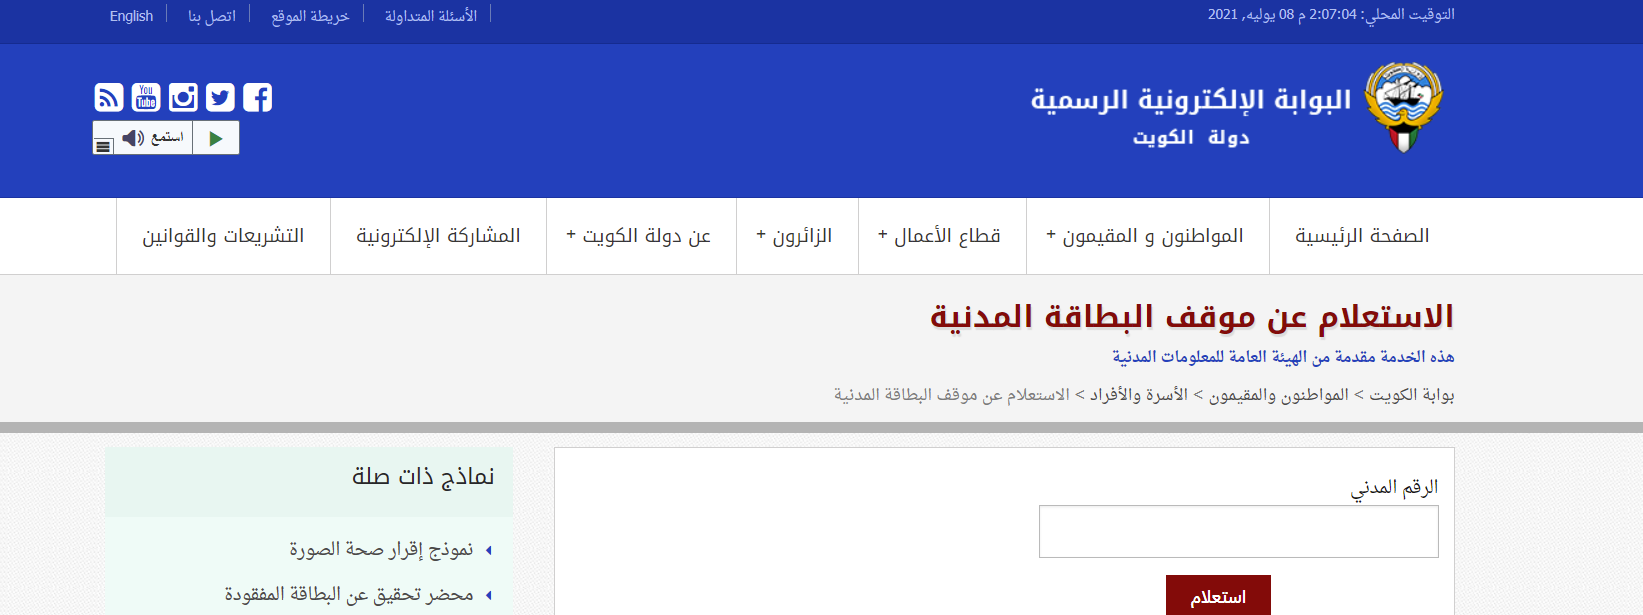 الاستعلام عن البطاقة المدنية 2021 الكويت عبر موقع الهيئات العامة للشئون المدنية